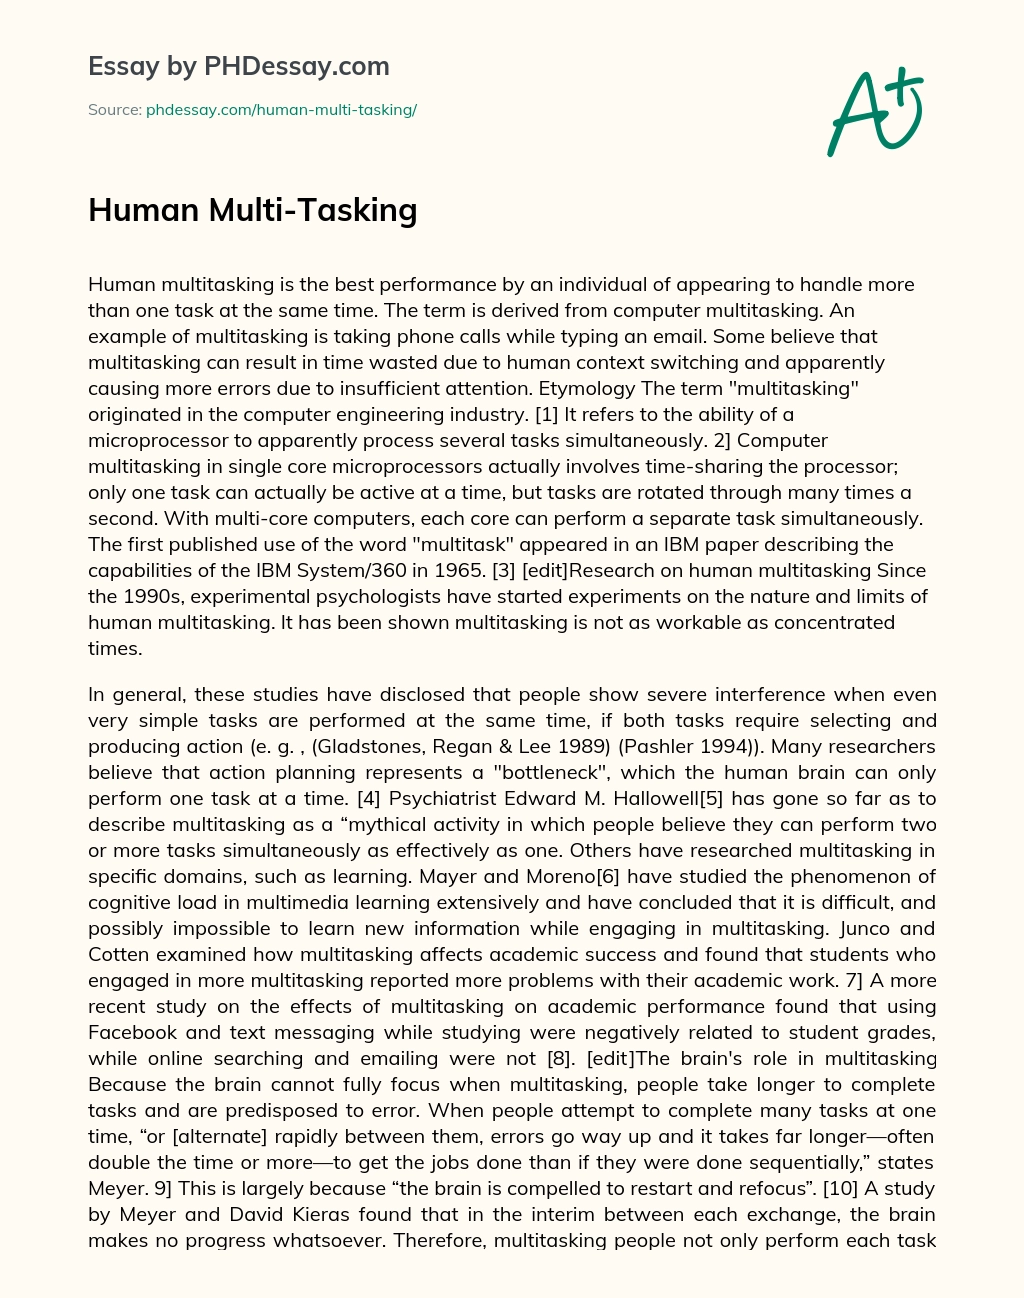 Human Multi-Tasking essay